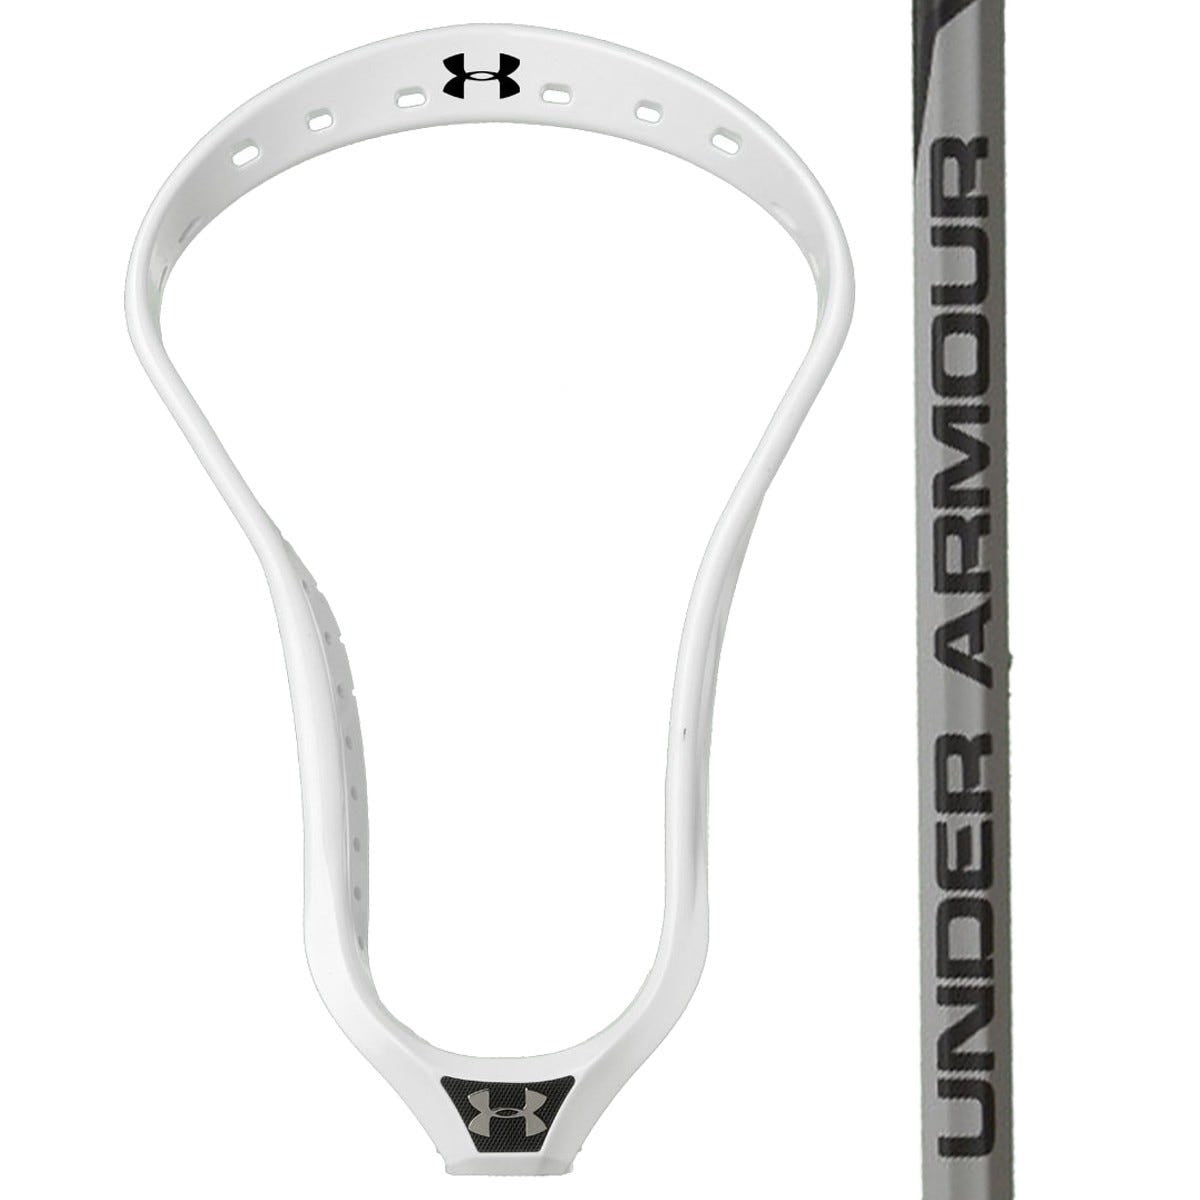 UA Command X Complete Attack Lacrosse Stick